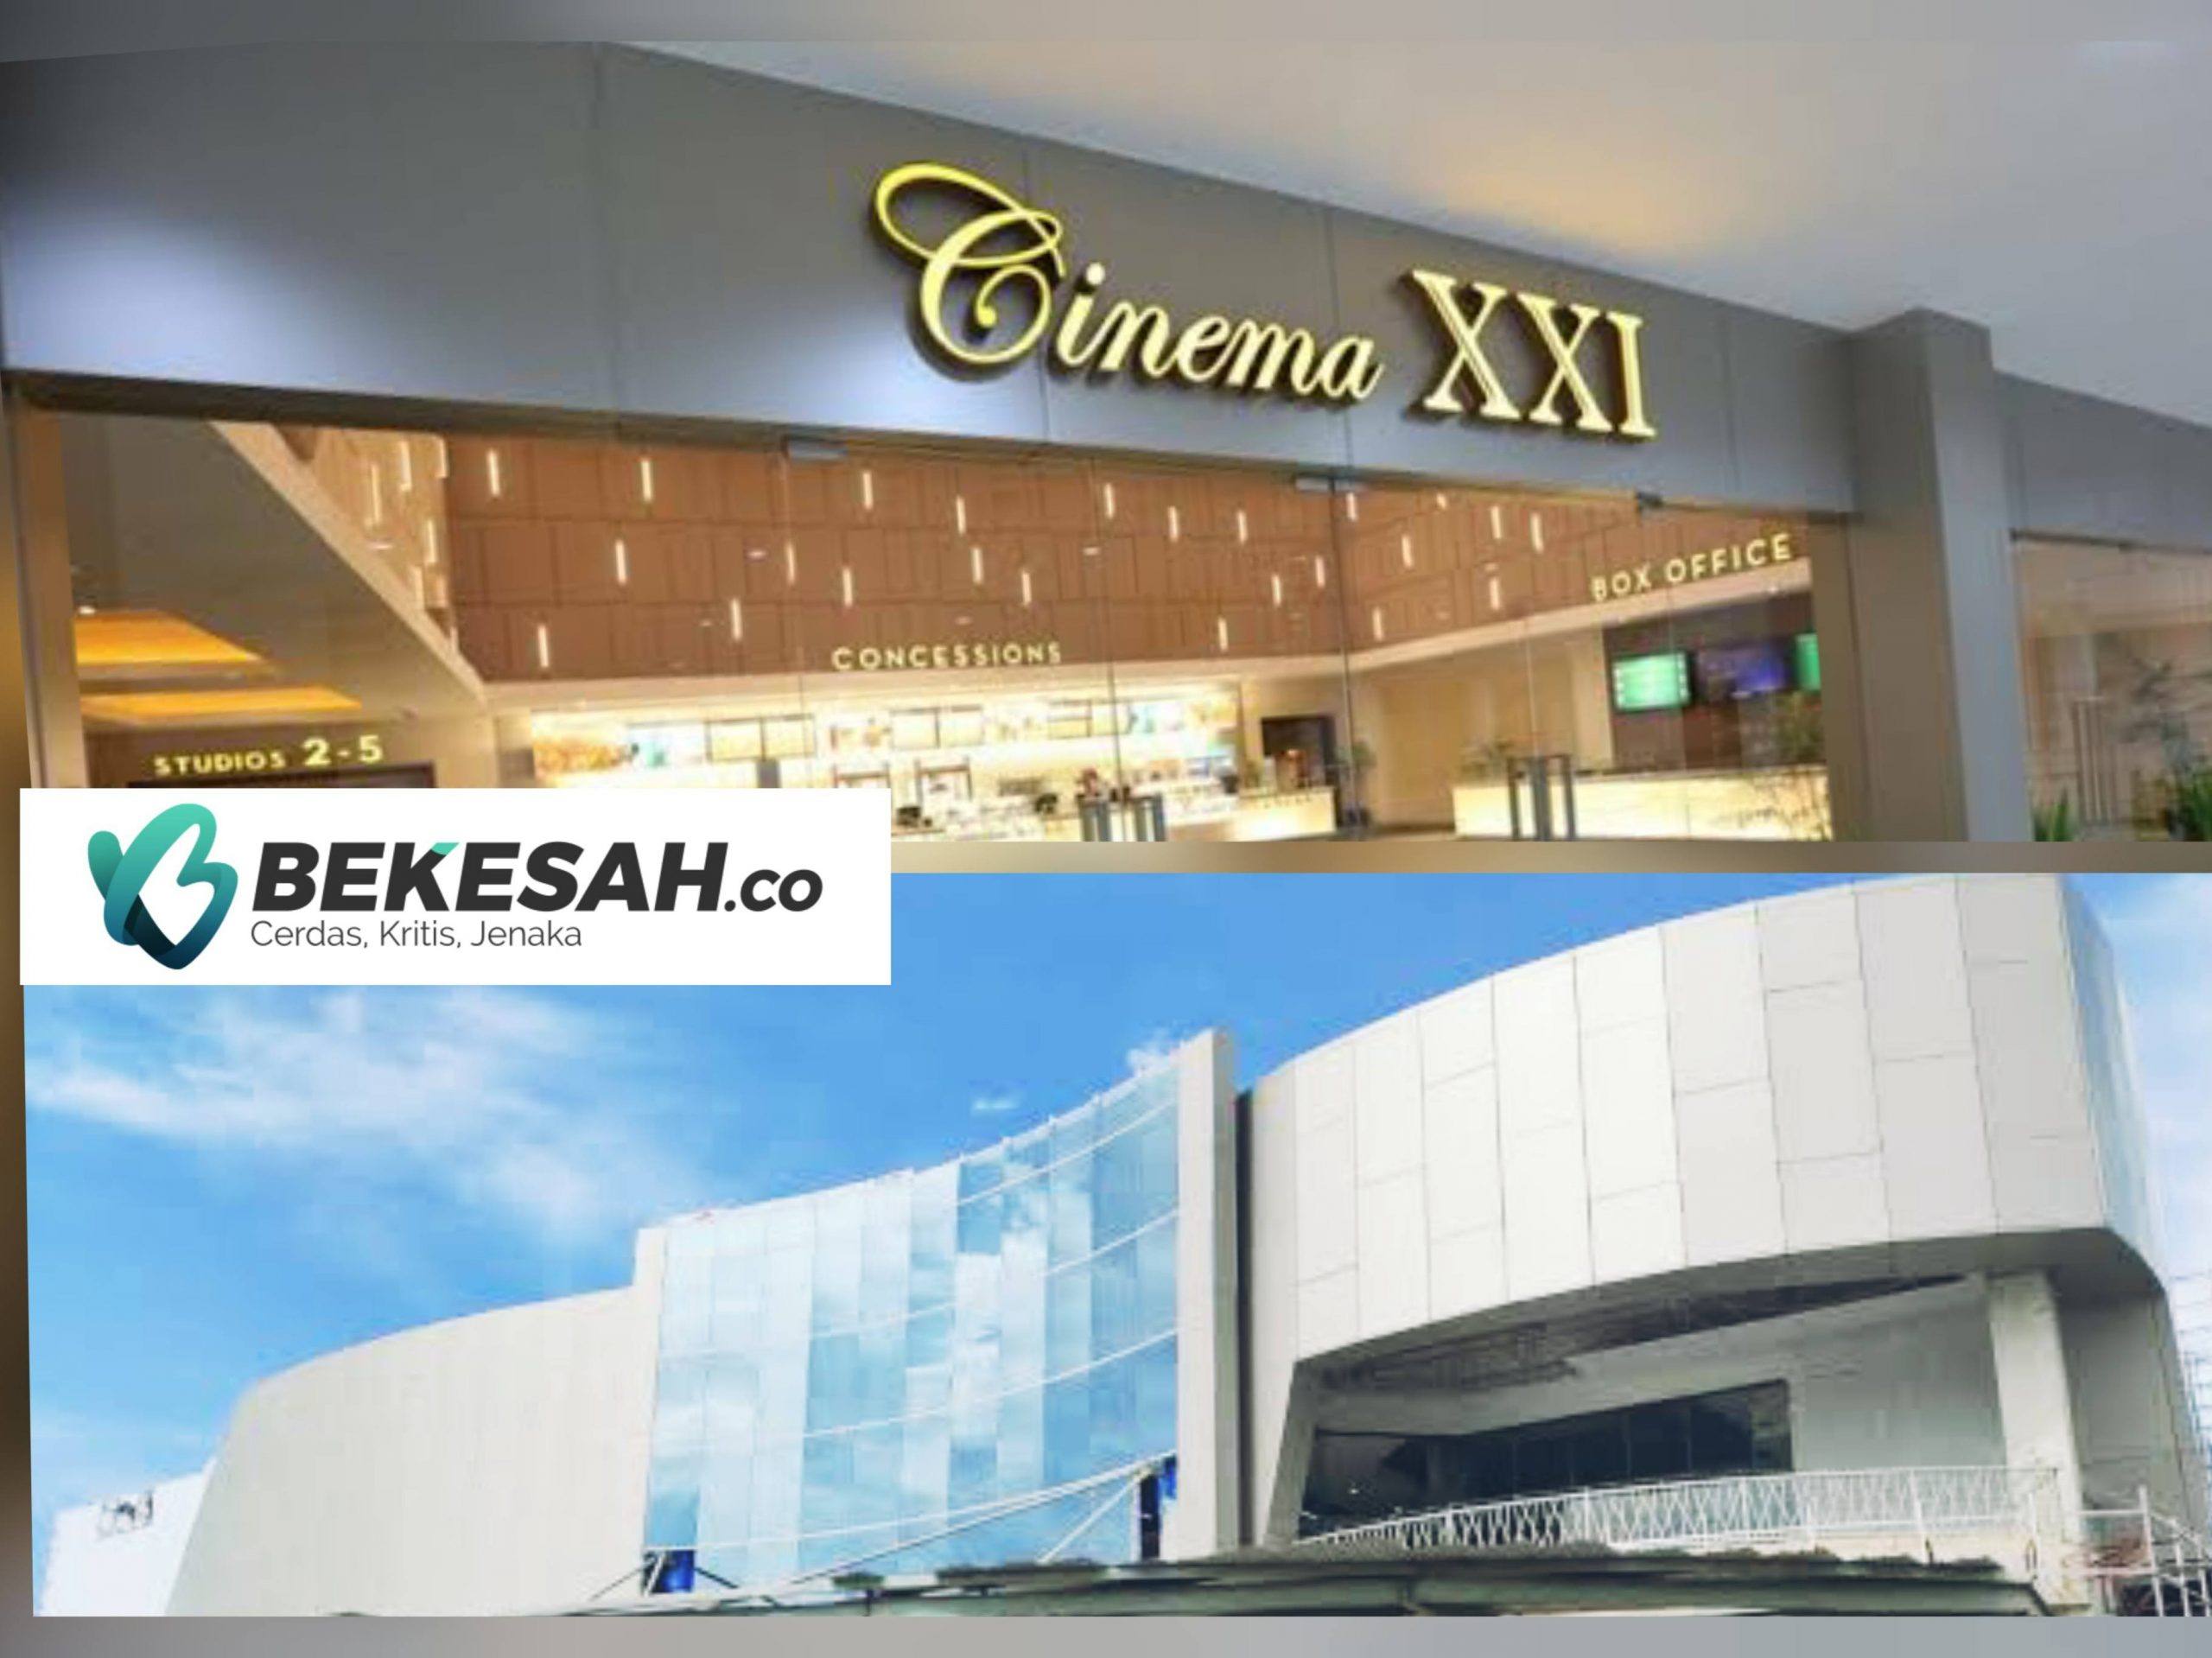 Manajemen Bontang Citimall Pastikan Bioskop yang Hadir Nantinya Cinema XXI